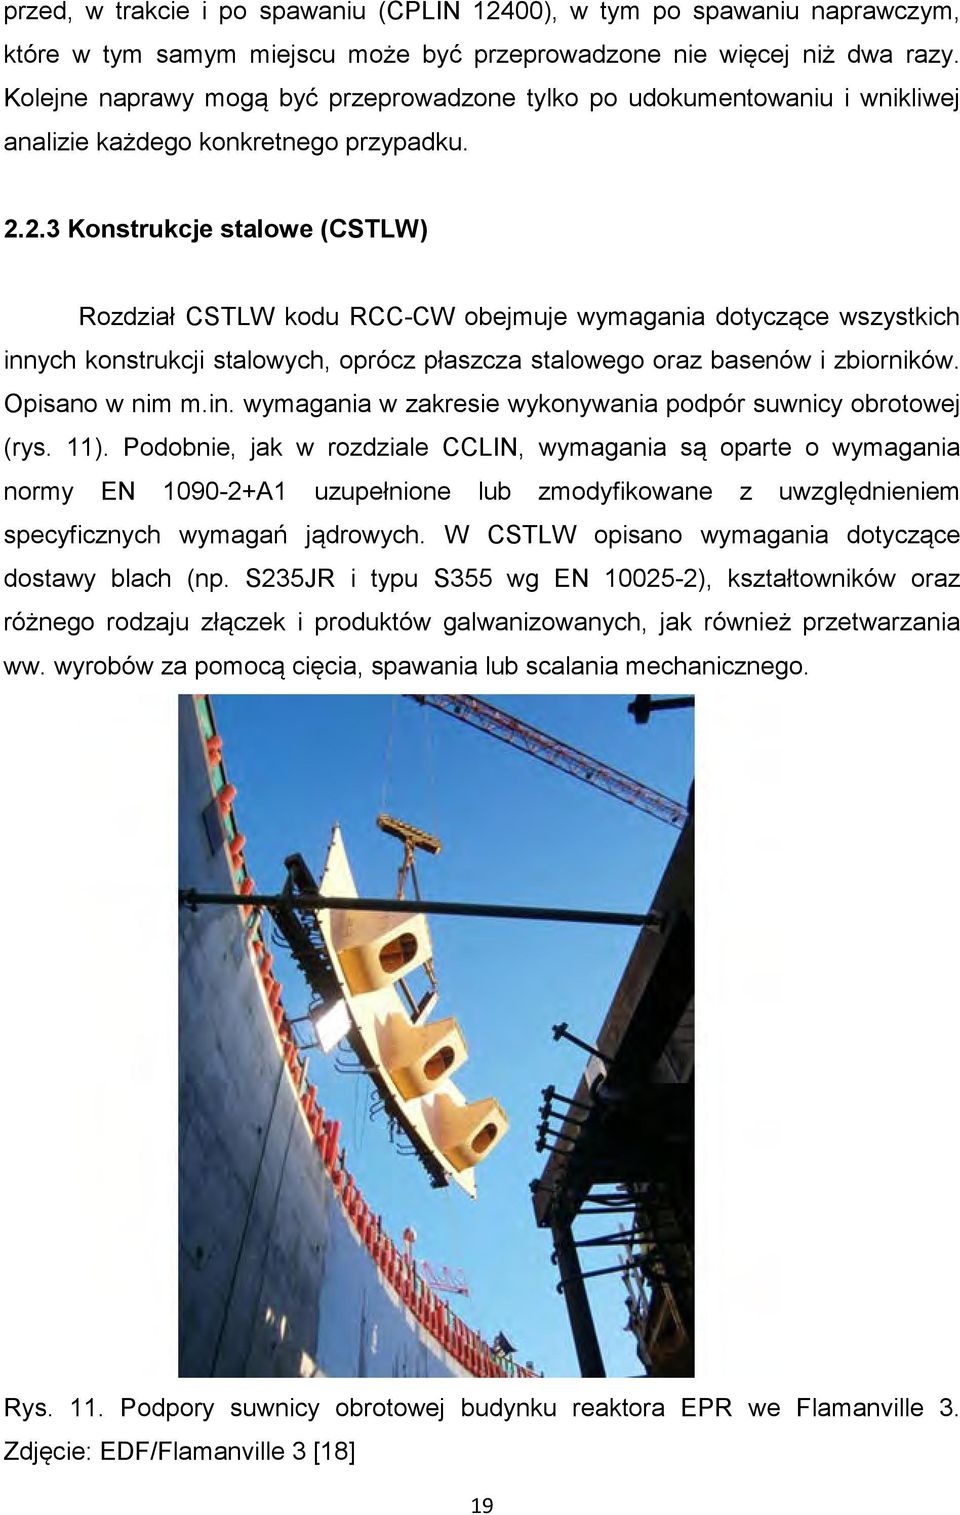 2.3 Konstrukcje stalowe (CSTLW) Rozdział CSTLW kodu RCC-CW obejmuje wymagania dotyczące wszystkich innych konstrukcji stalowych, oprócz płaszcza stalowego oraz basenów i zbiorników. Opisano w nim m.